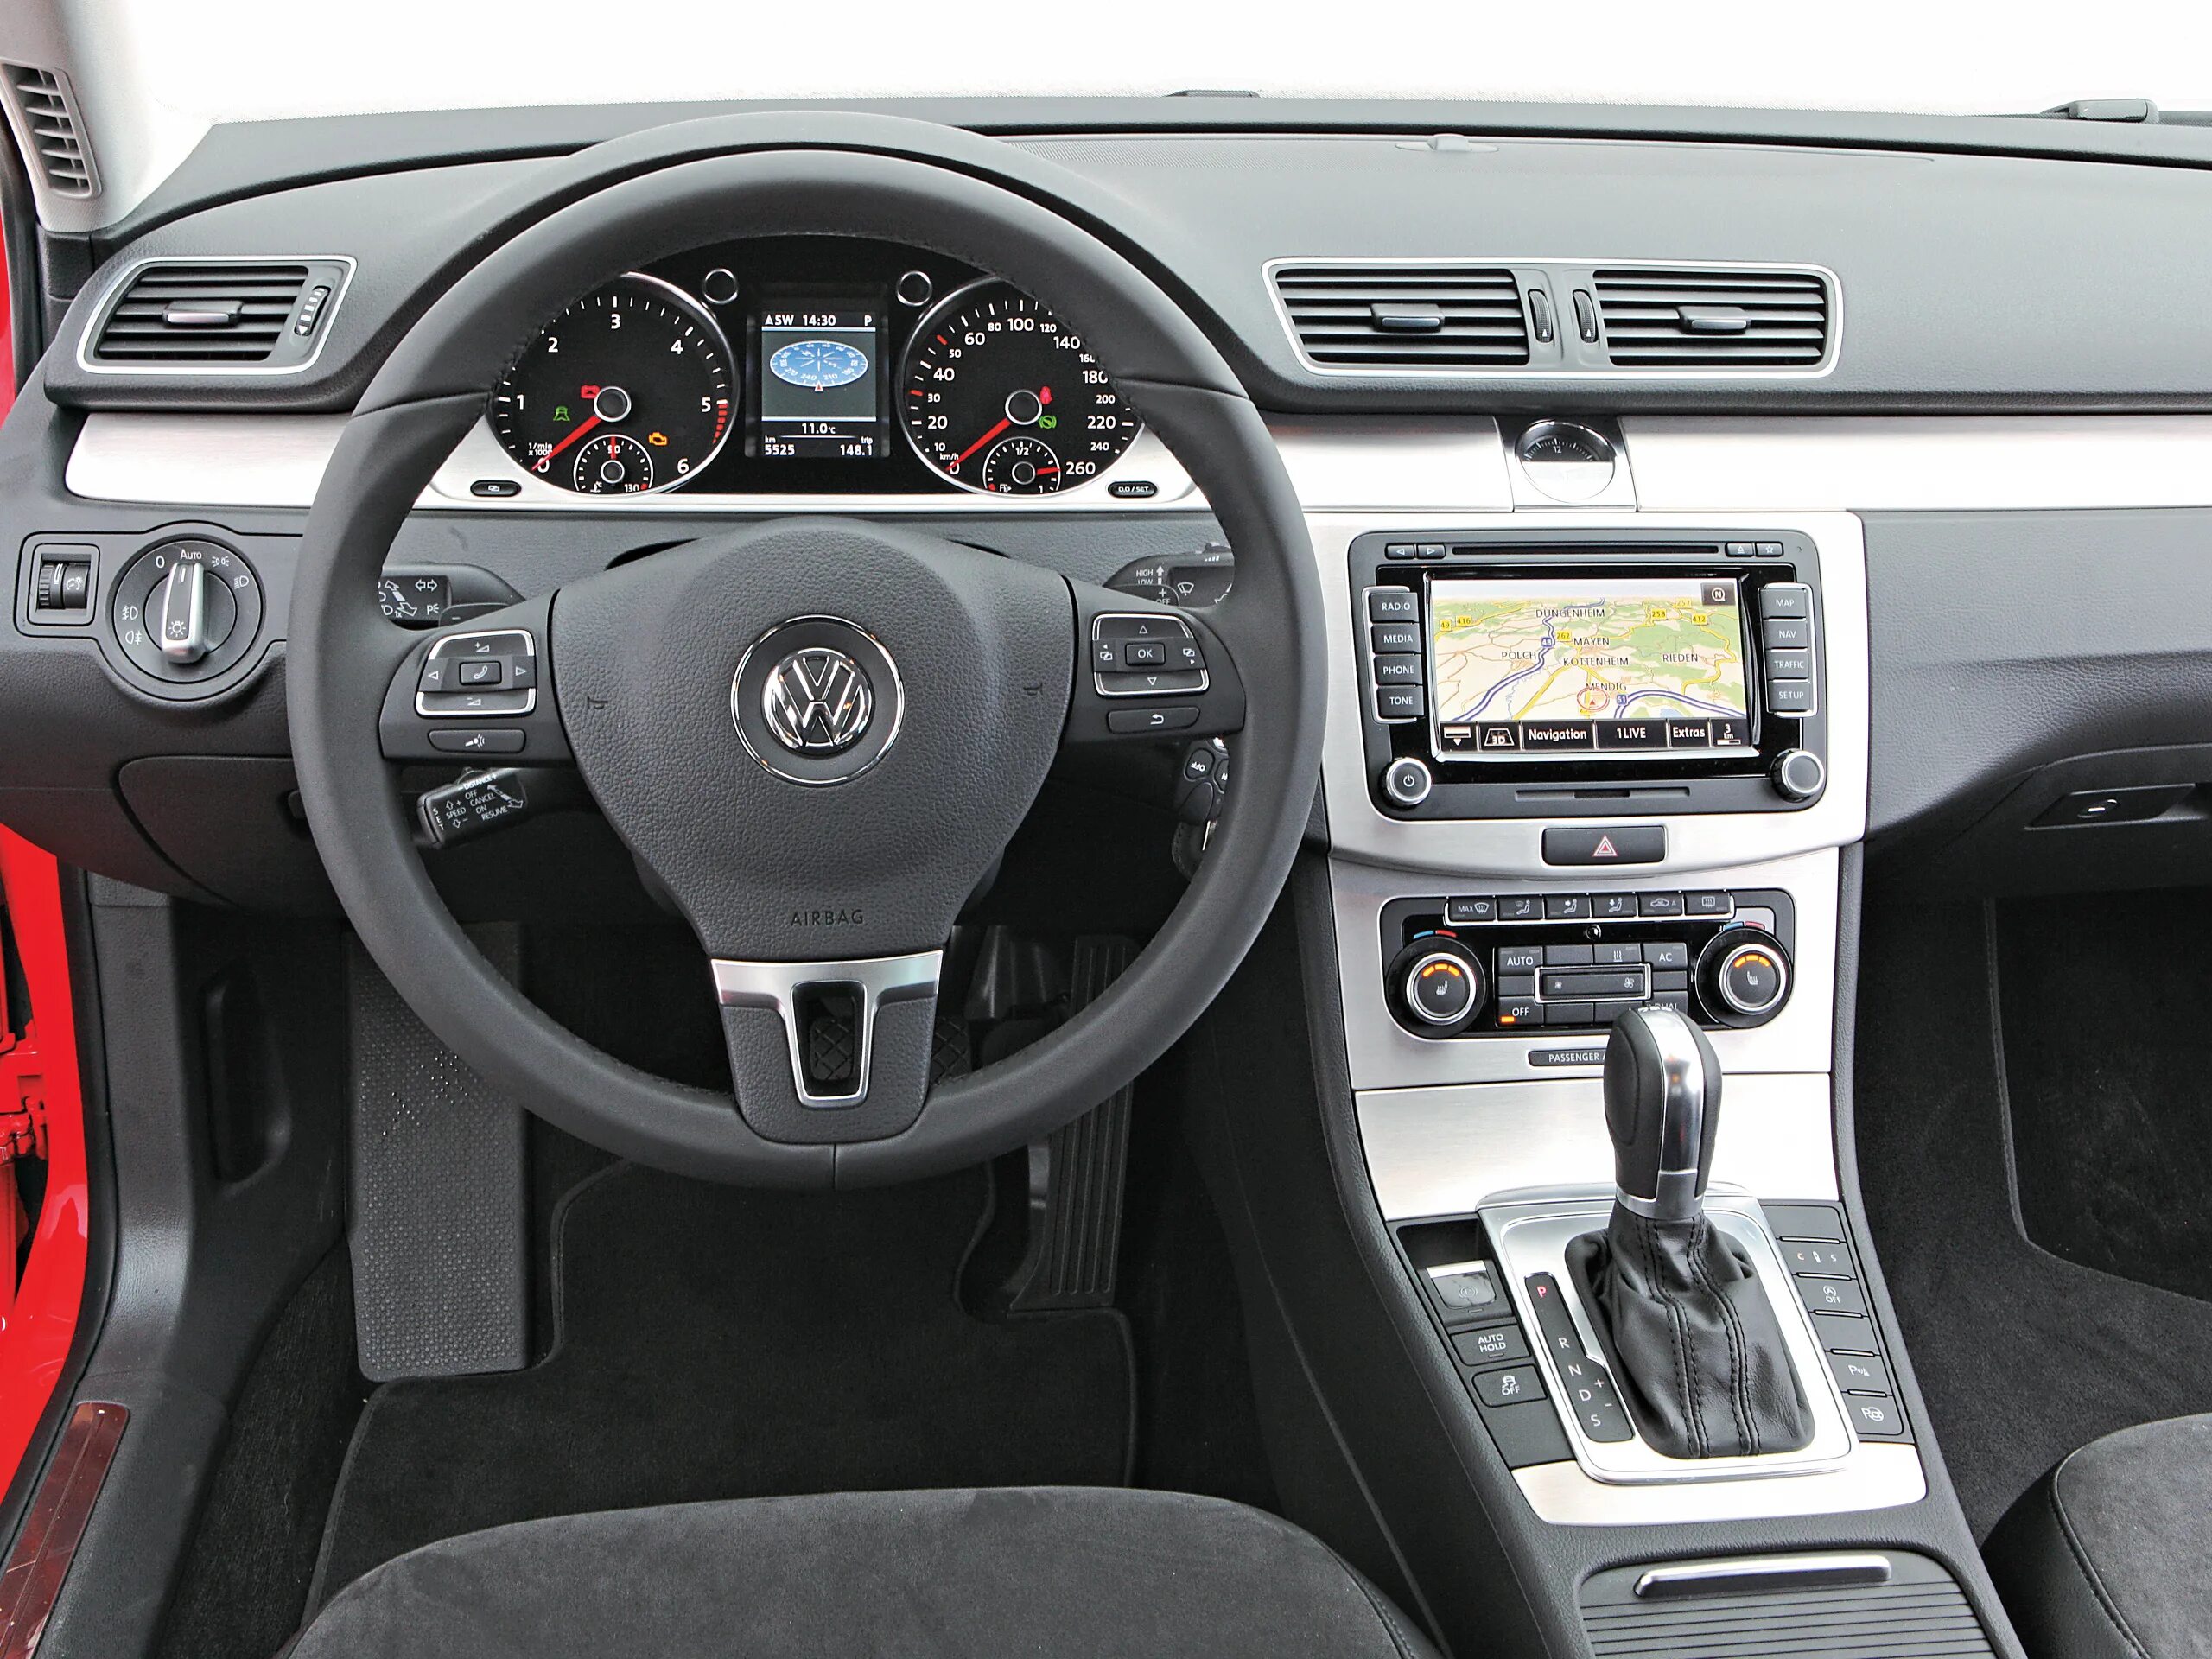 Vw b6 2.0. Volkswagen Passat b6 2.0 TDI 2009. Volkswagen Passat b7 TDI. Volkswagen Passat b6 2010 2.0 TDI. Фольксваген Пассат б6 2.0 салон.